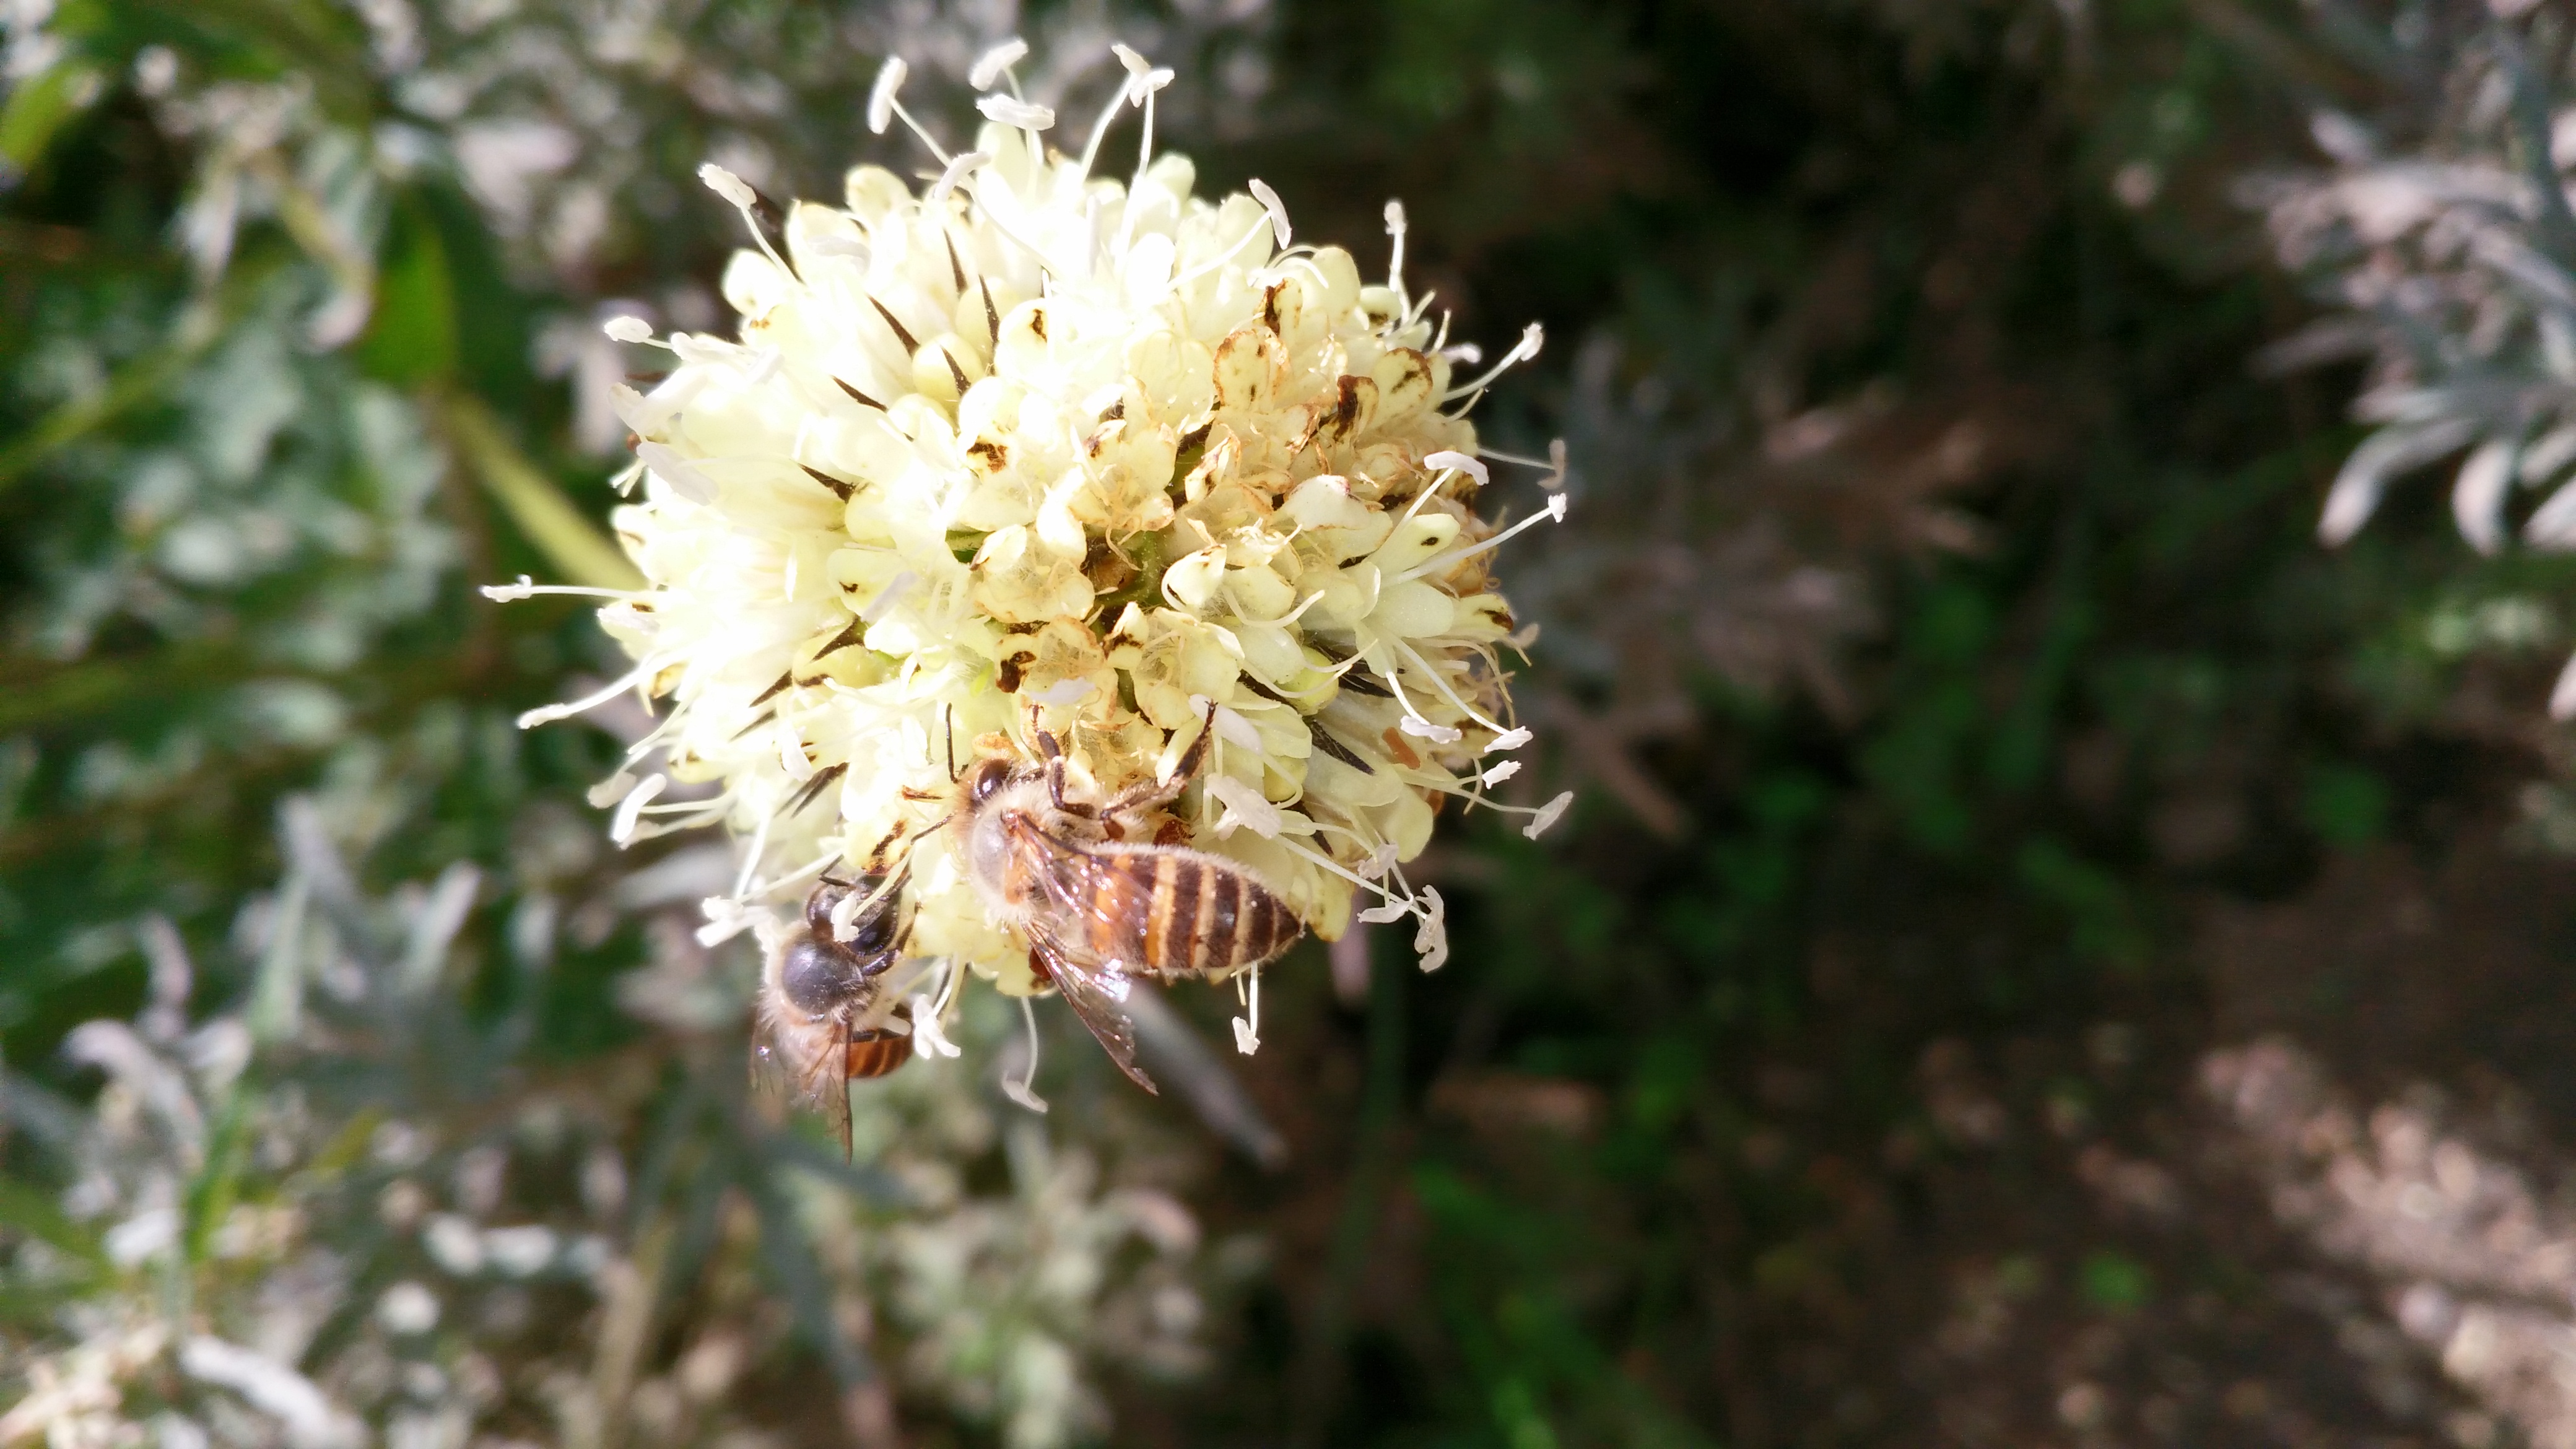 喜馬拉雅蜜蜂